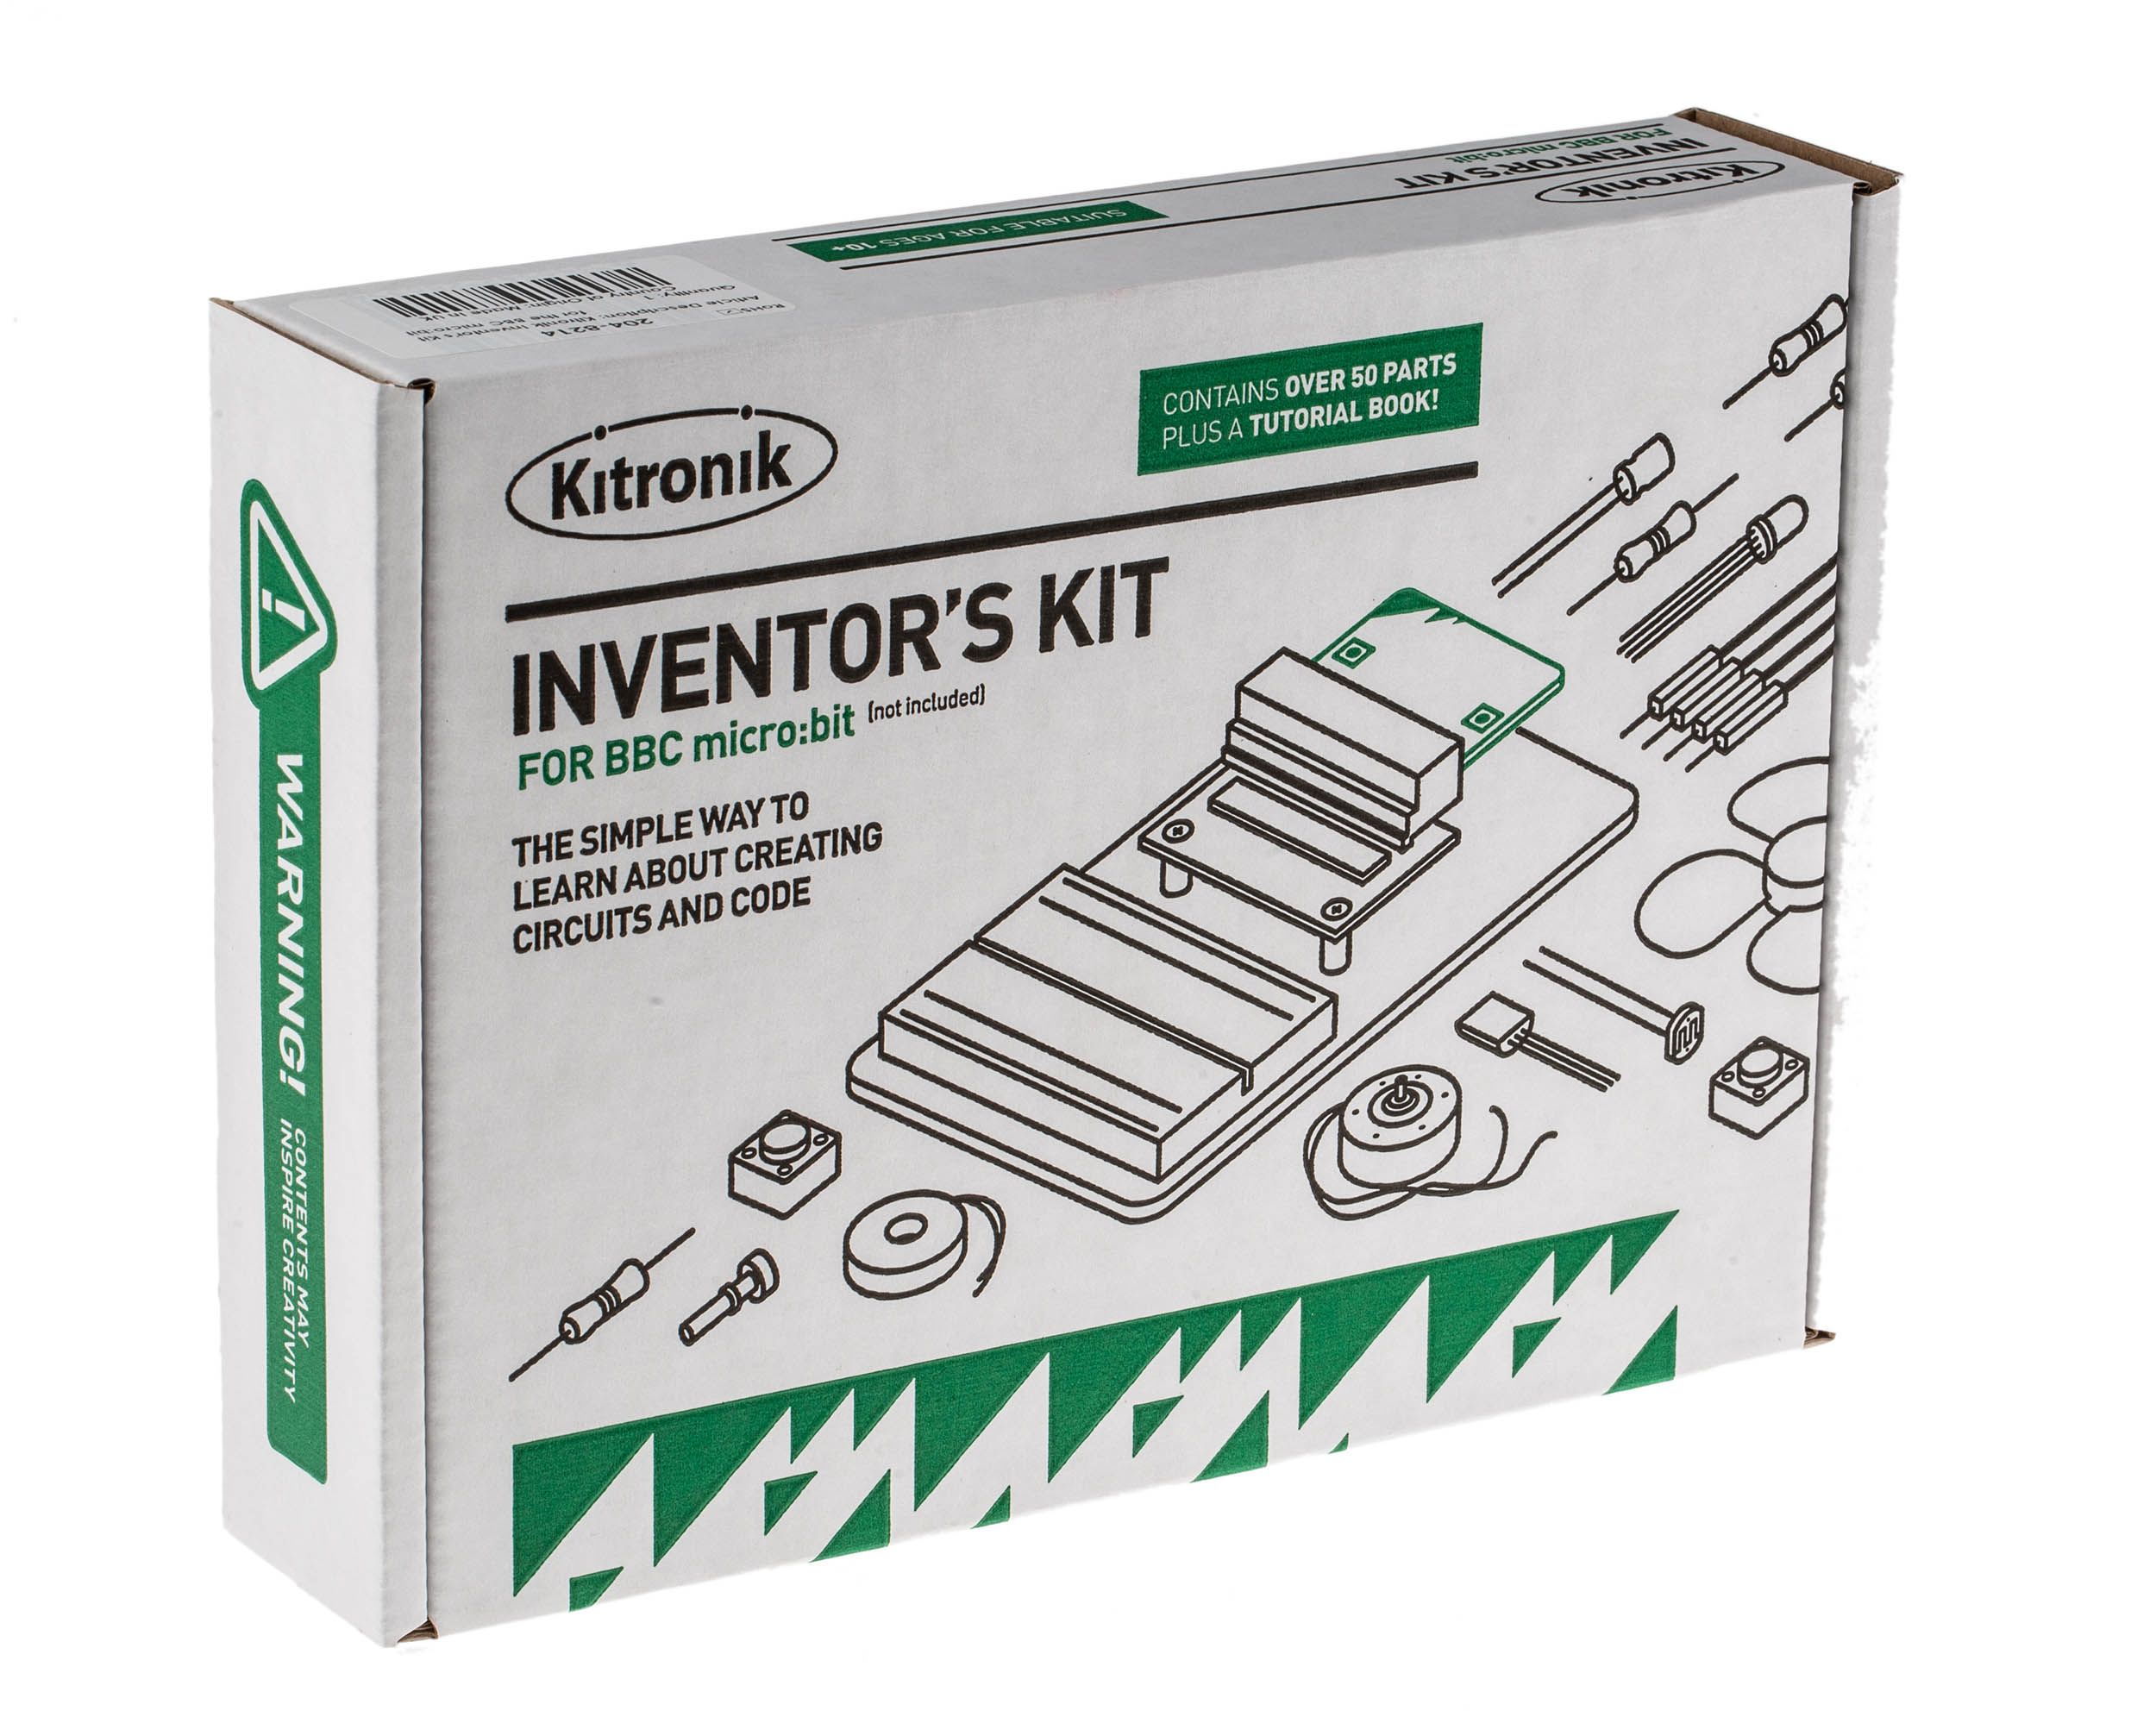 Kitronik Inventors Kit for the BBC micro:bit